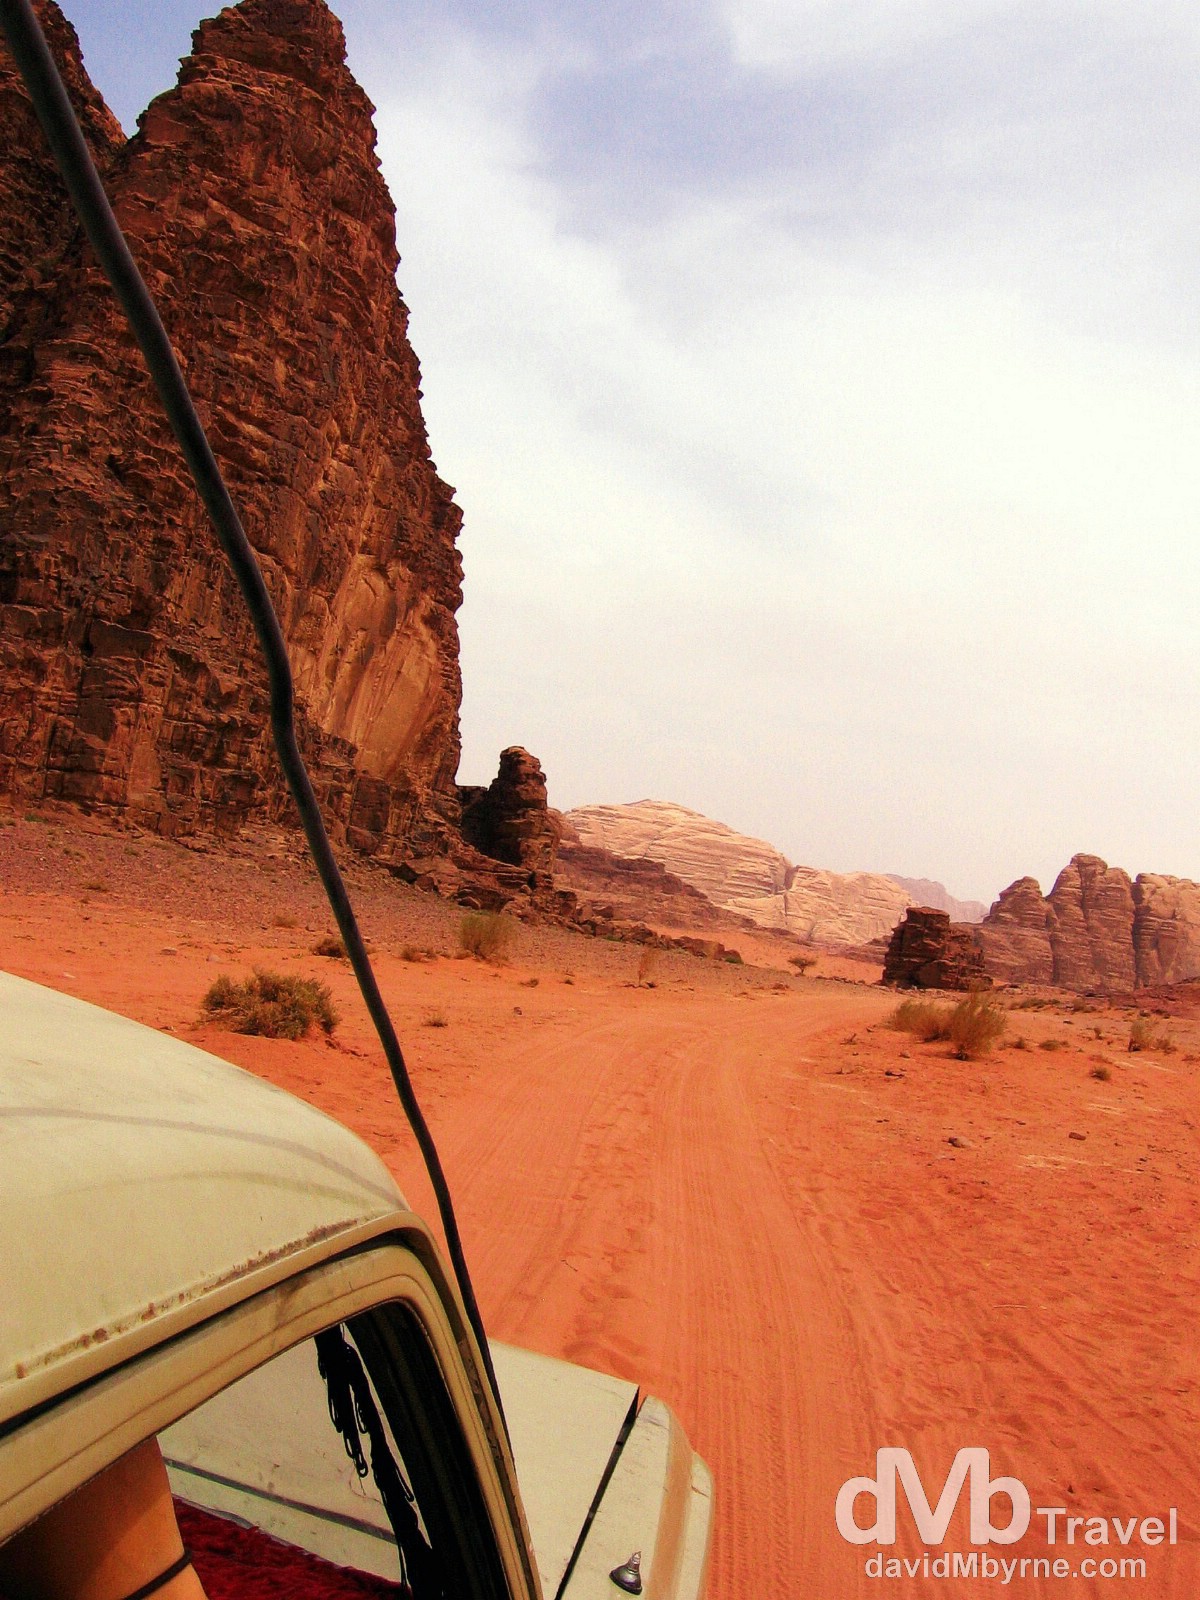 Driving through the red sands of Wadi Rum, Jordan. April 25th 2008.